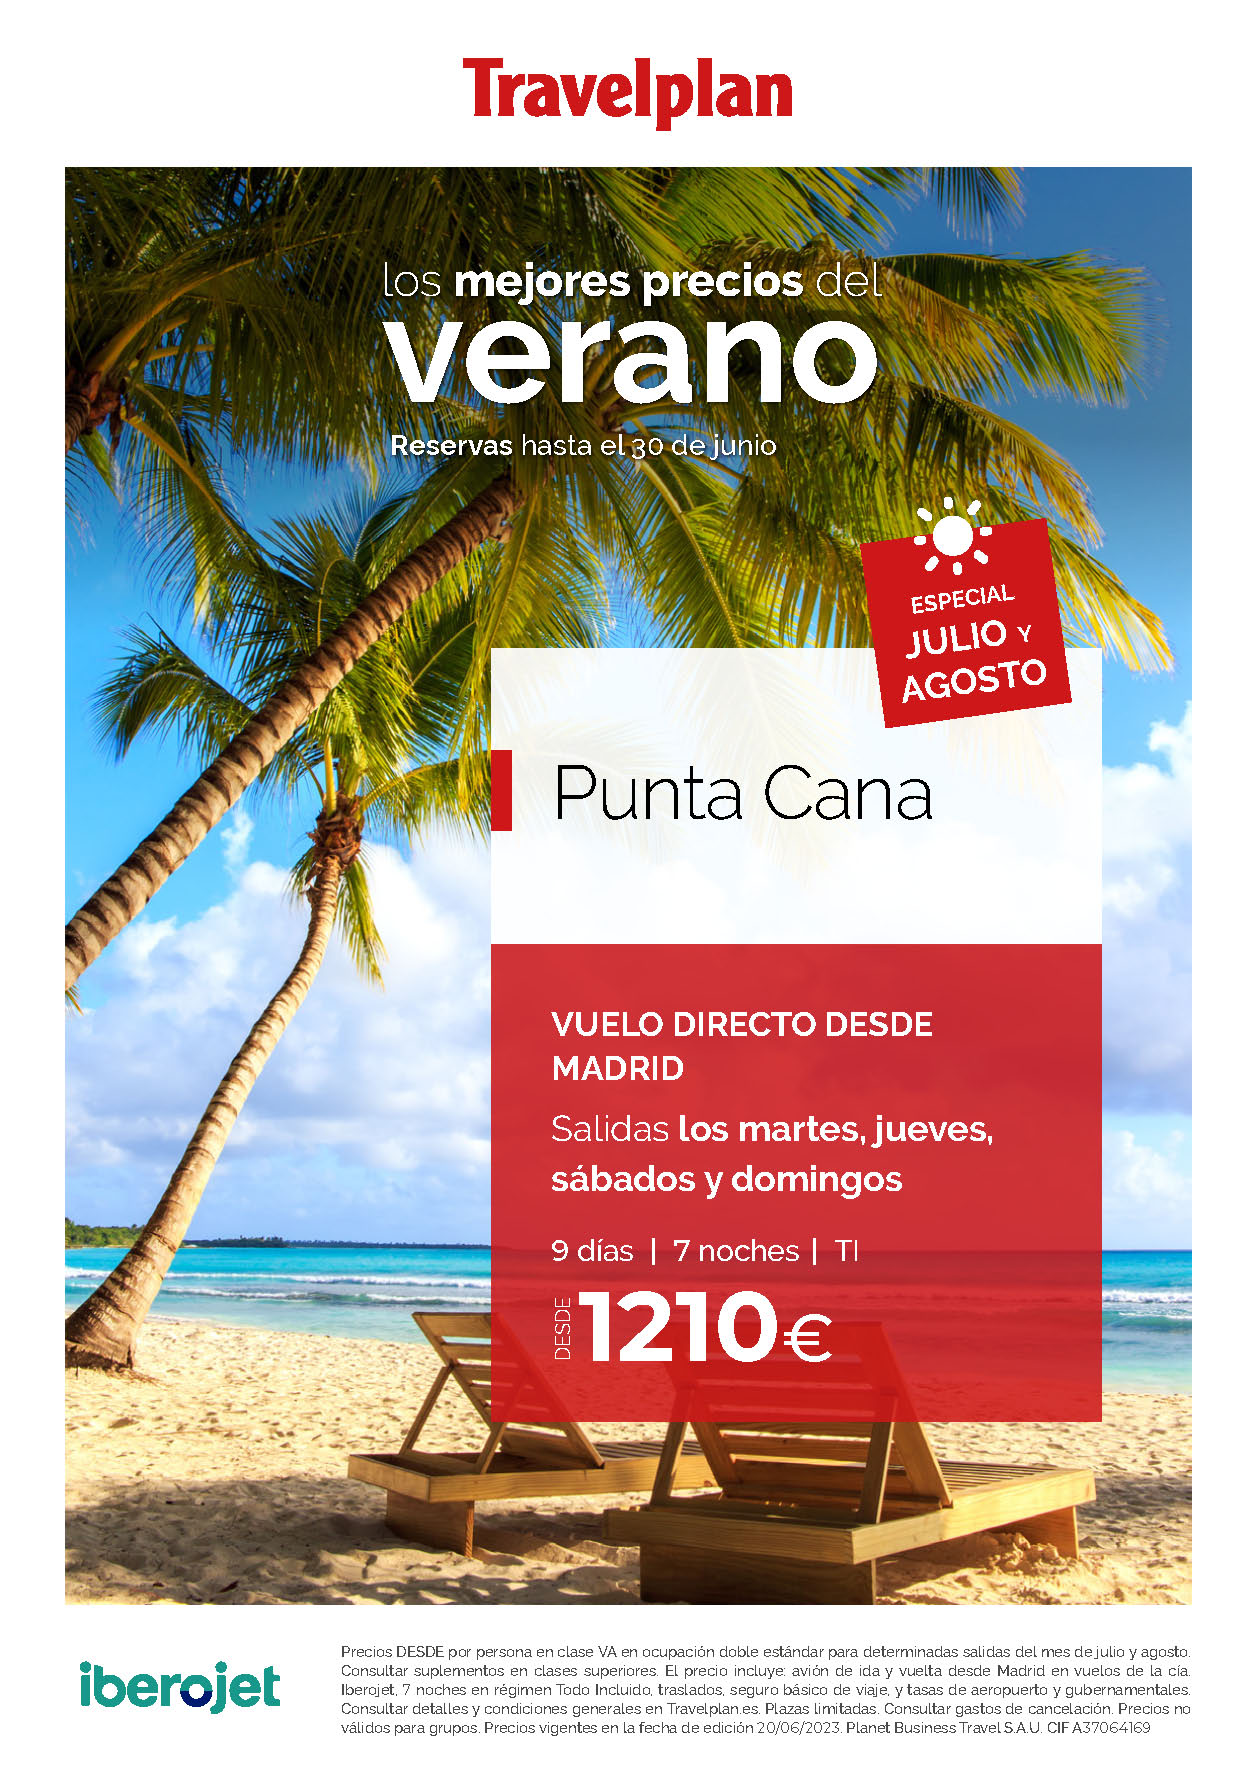 Oferta Travelplan Julio y Agosto 2023 Estancia en Punta Cana Todo Incluido 9 dias salidas en vuelos directos desde Madrid